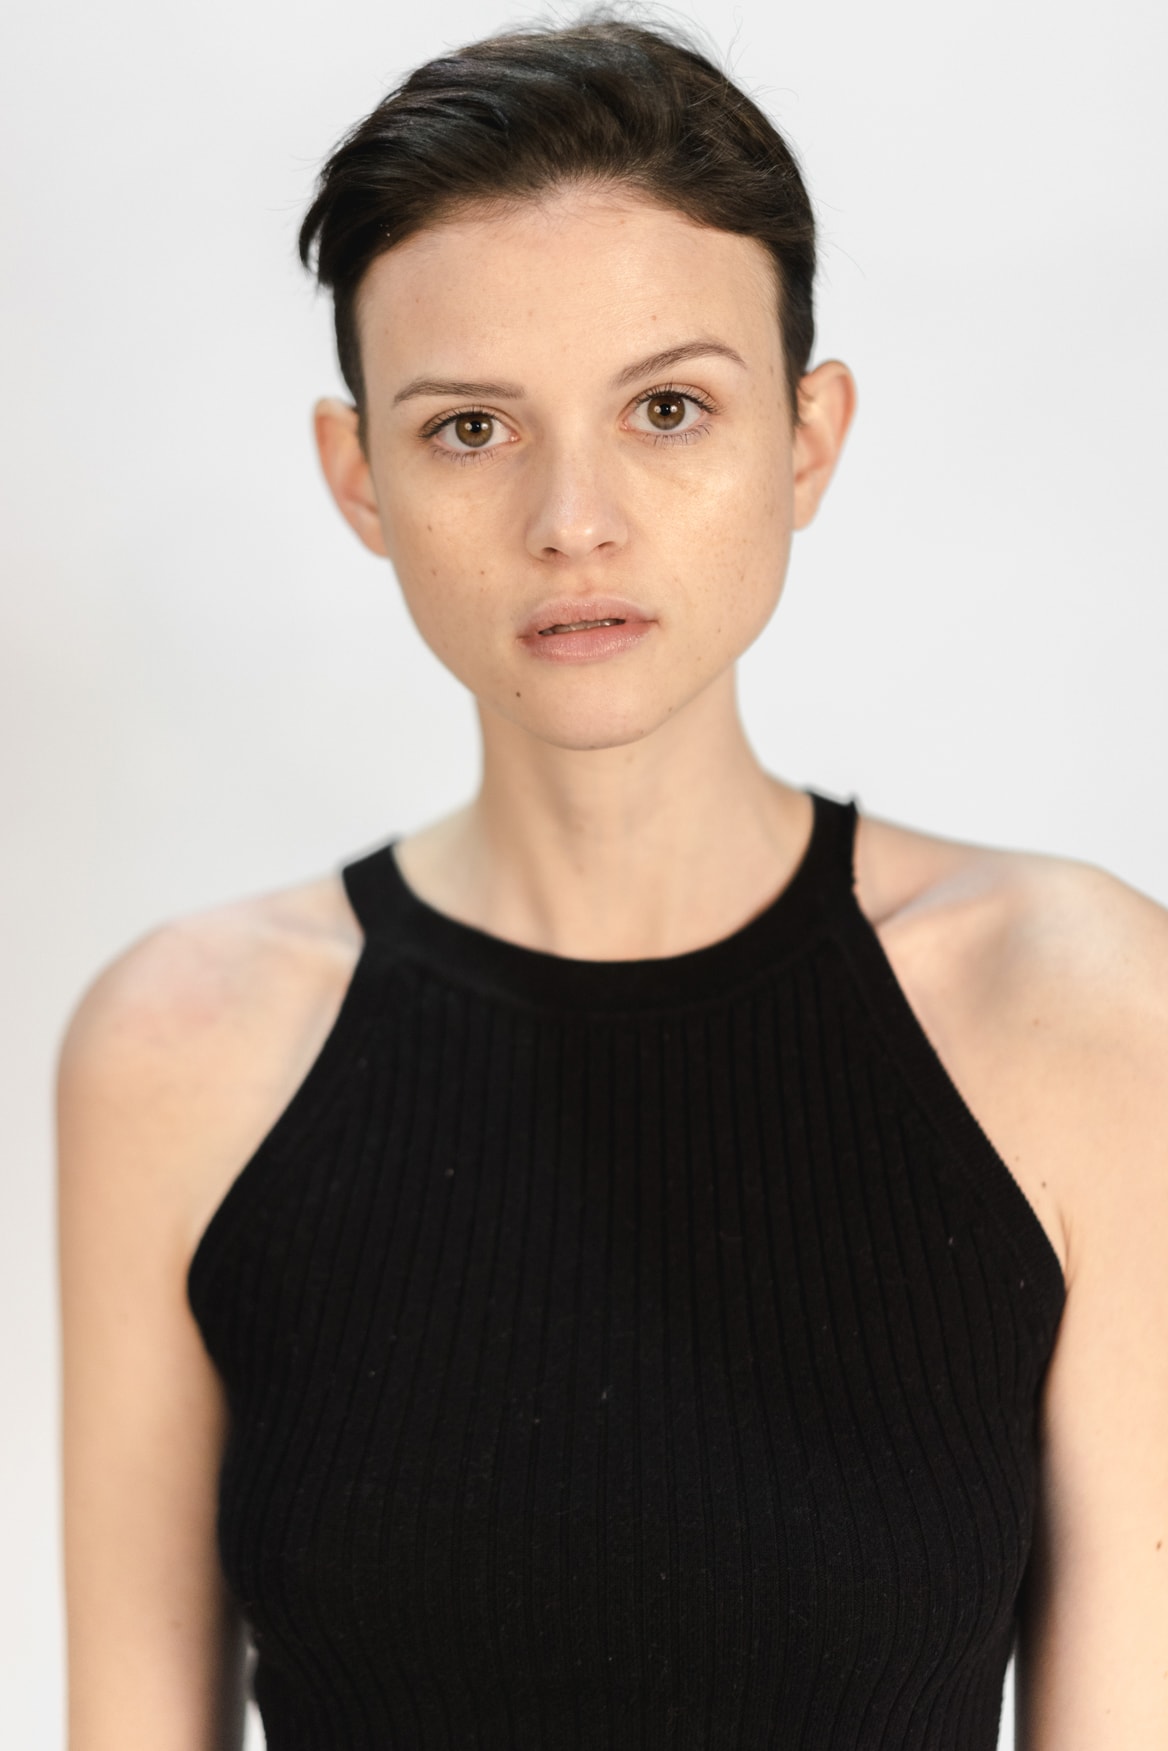 adidas Originals Danielle Cathari Street Casting Model Portrait